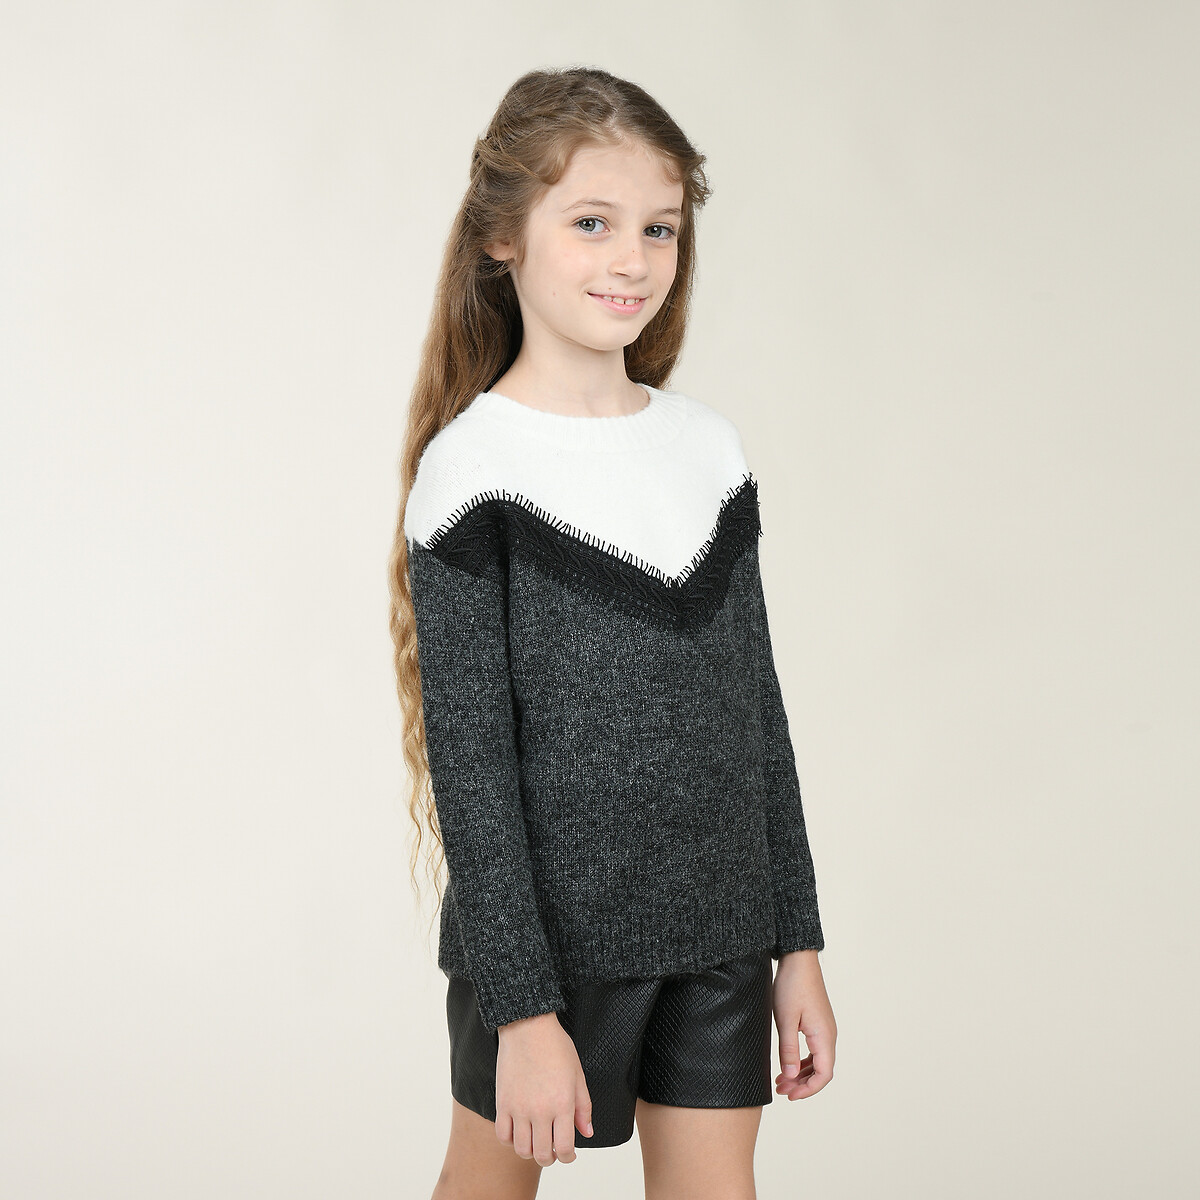 Пуловер La Redoute 4-14 лет 10/12 лет - 138/150 см серый, размер 10/12 лет - 138/150 см